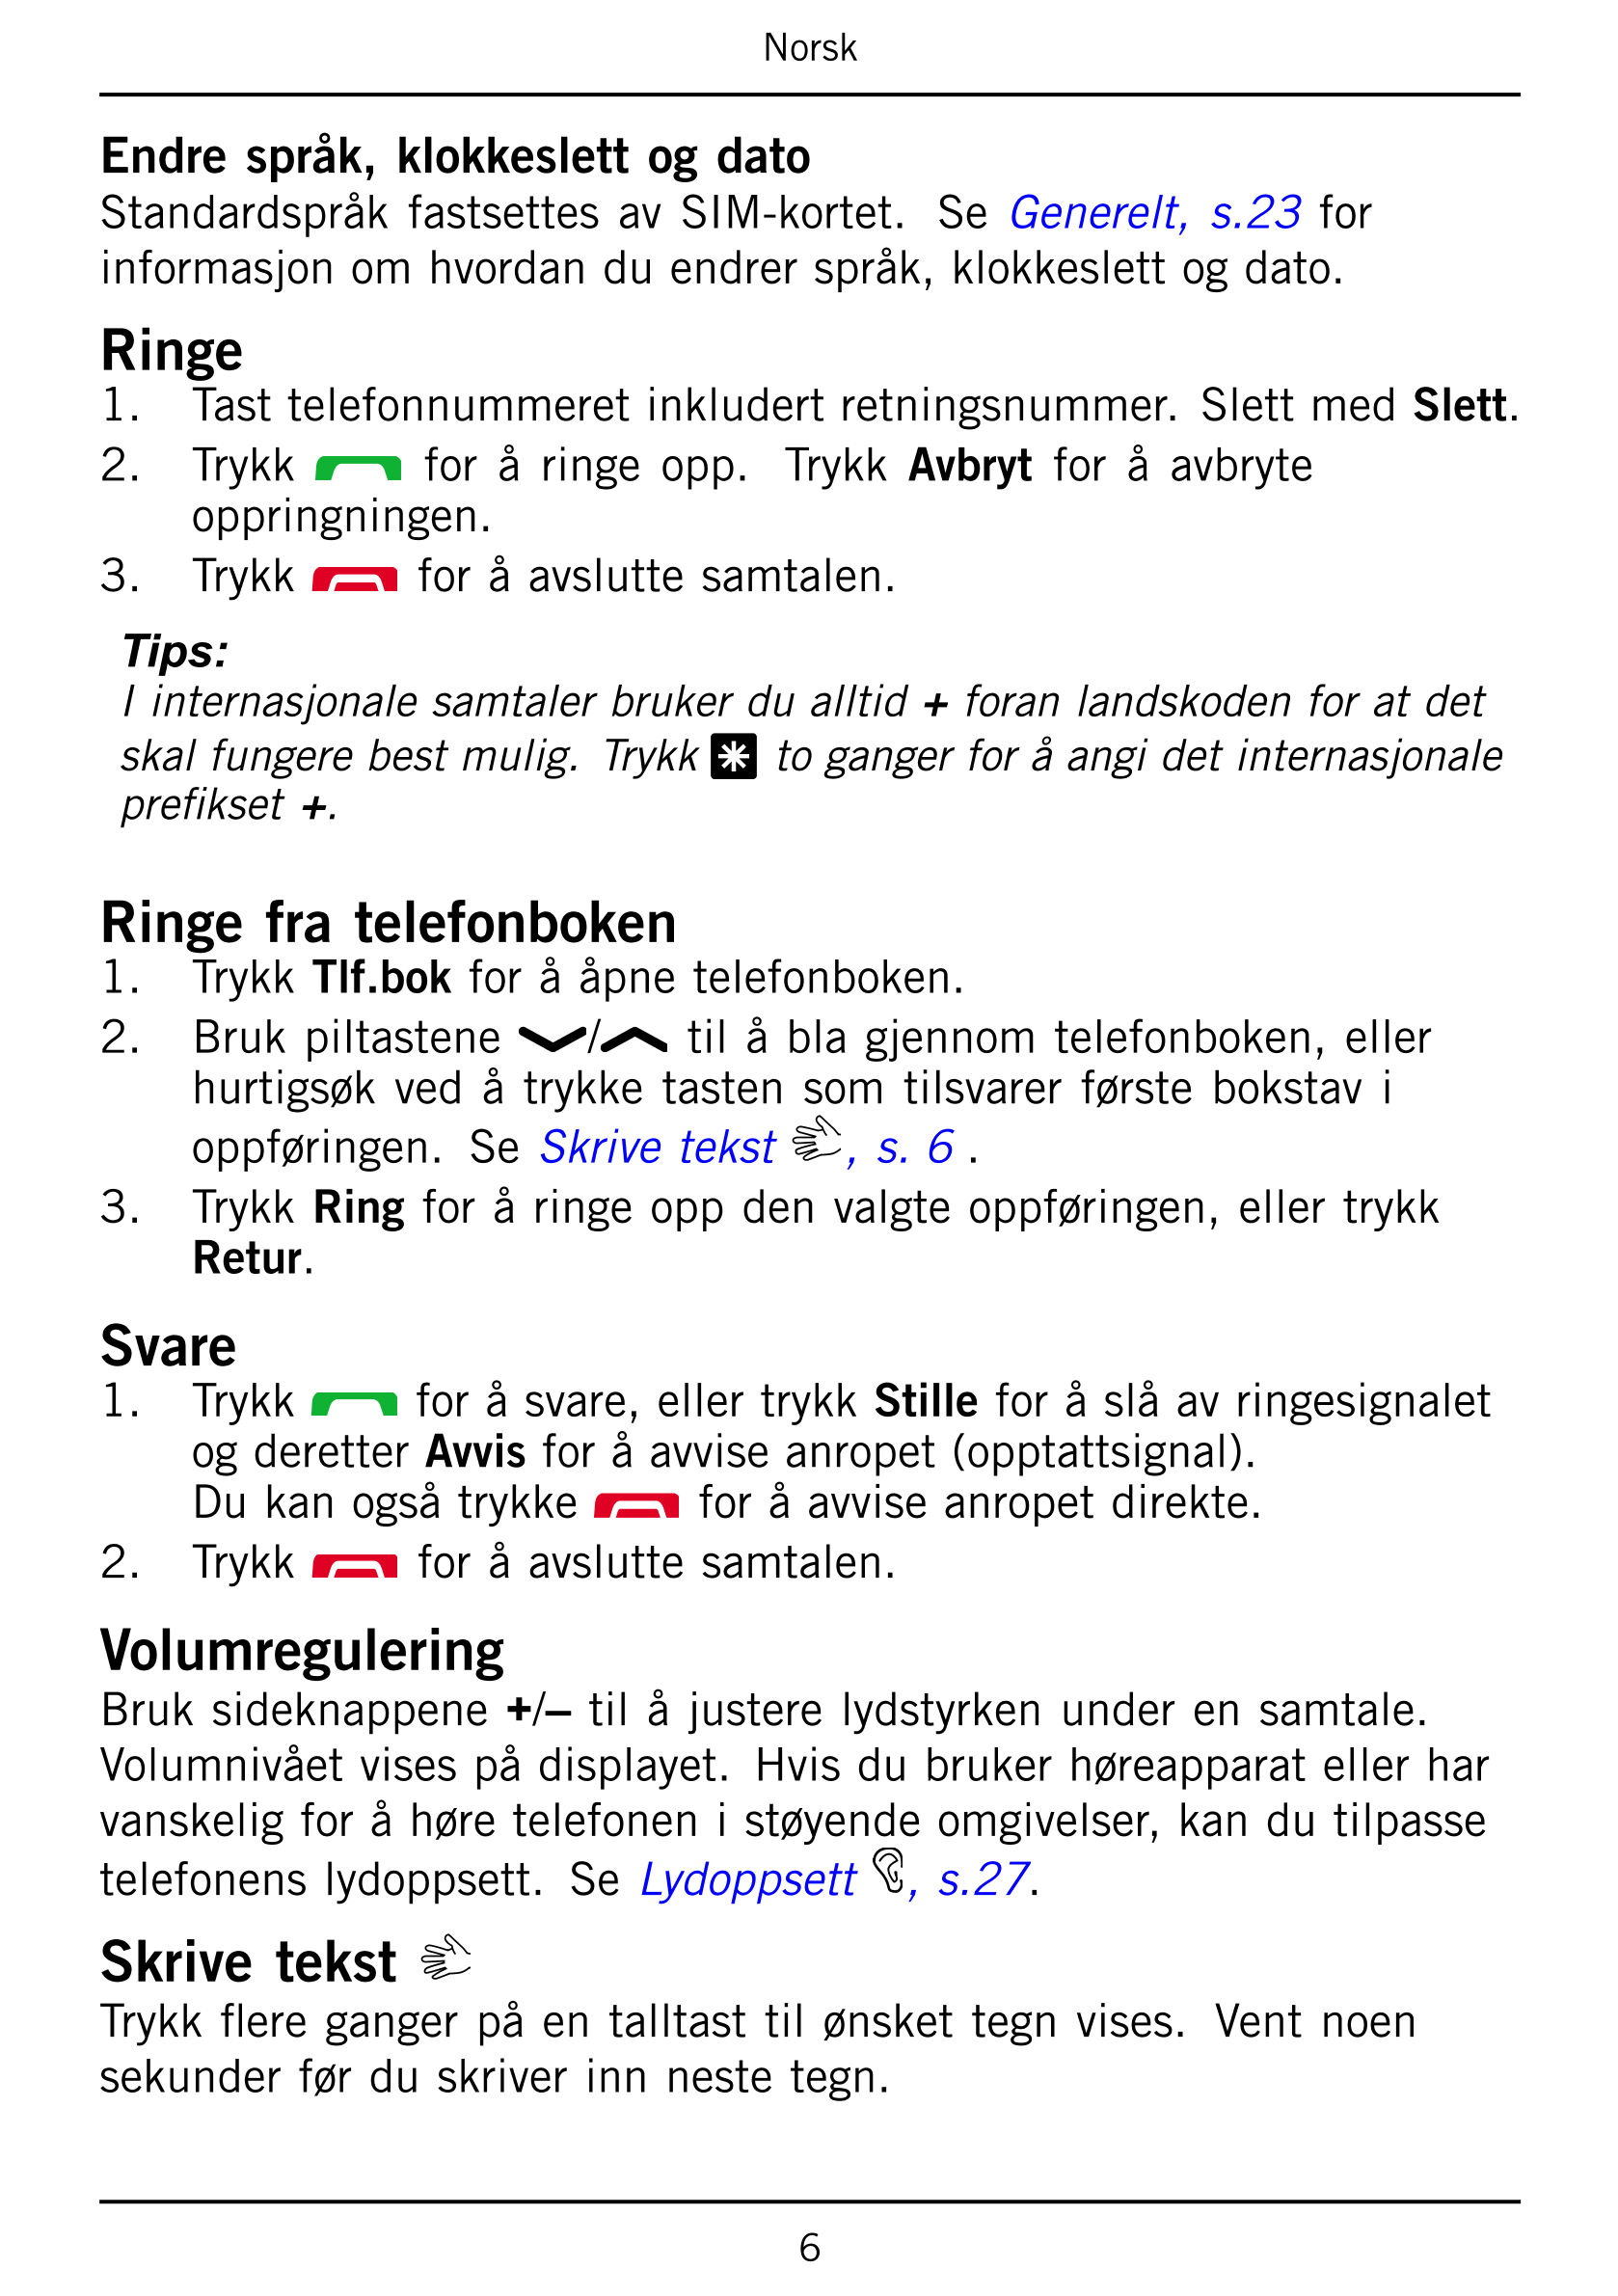 Norsk
Endre språk, klokkeslett og dato
Standardspråk  fastsettes  av  SIM-kortet.   Se Generelt,  s.23 for
informasjon om hvorda